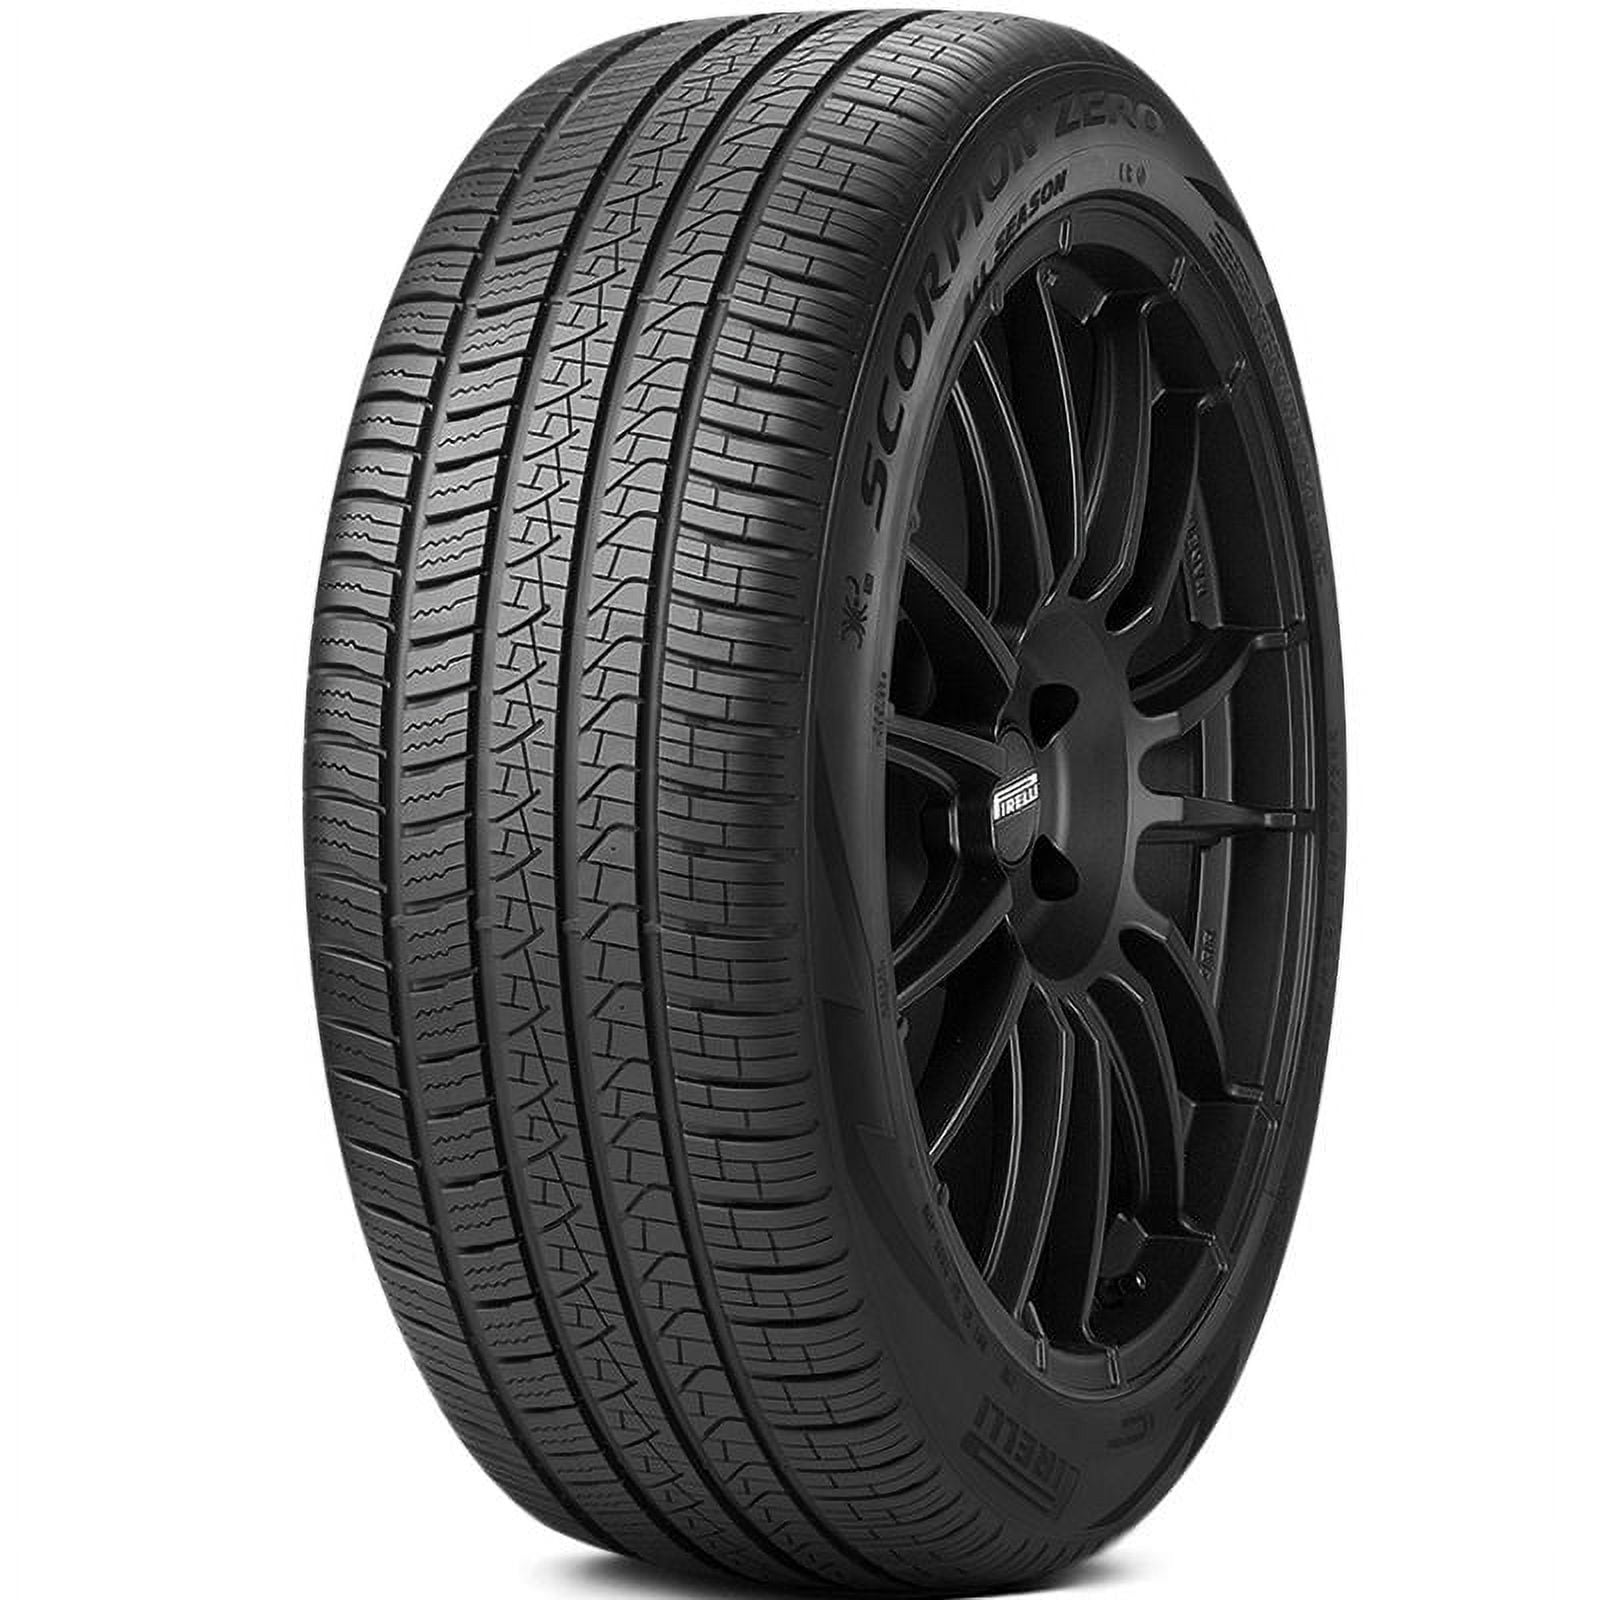 All Pirelli 265/55R19 Tire Season SUV/Crossover Scorpion 109W Zero All Season